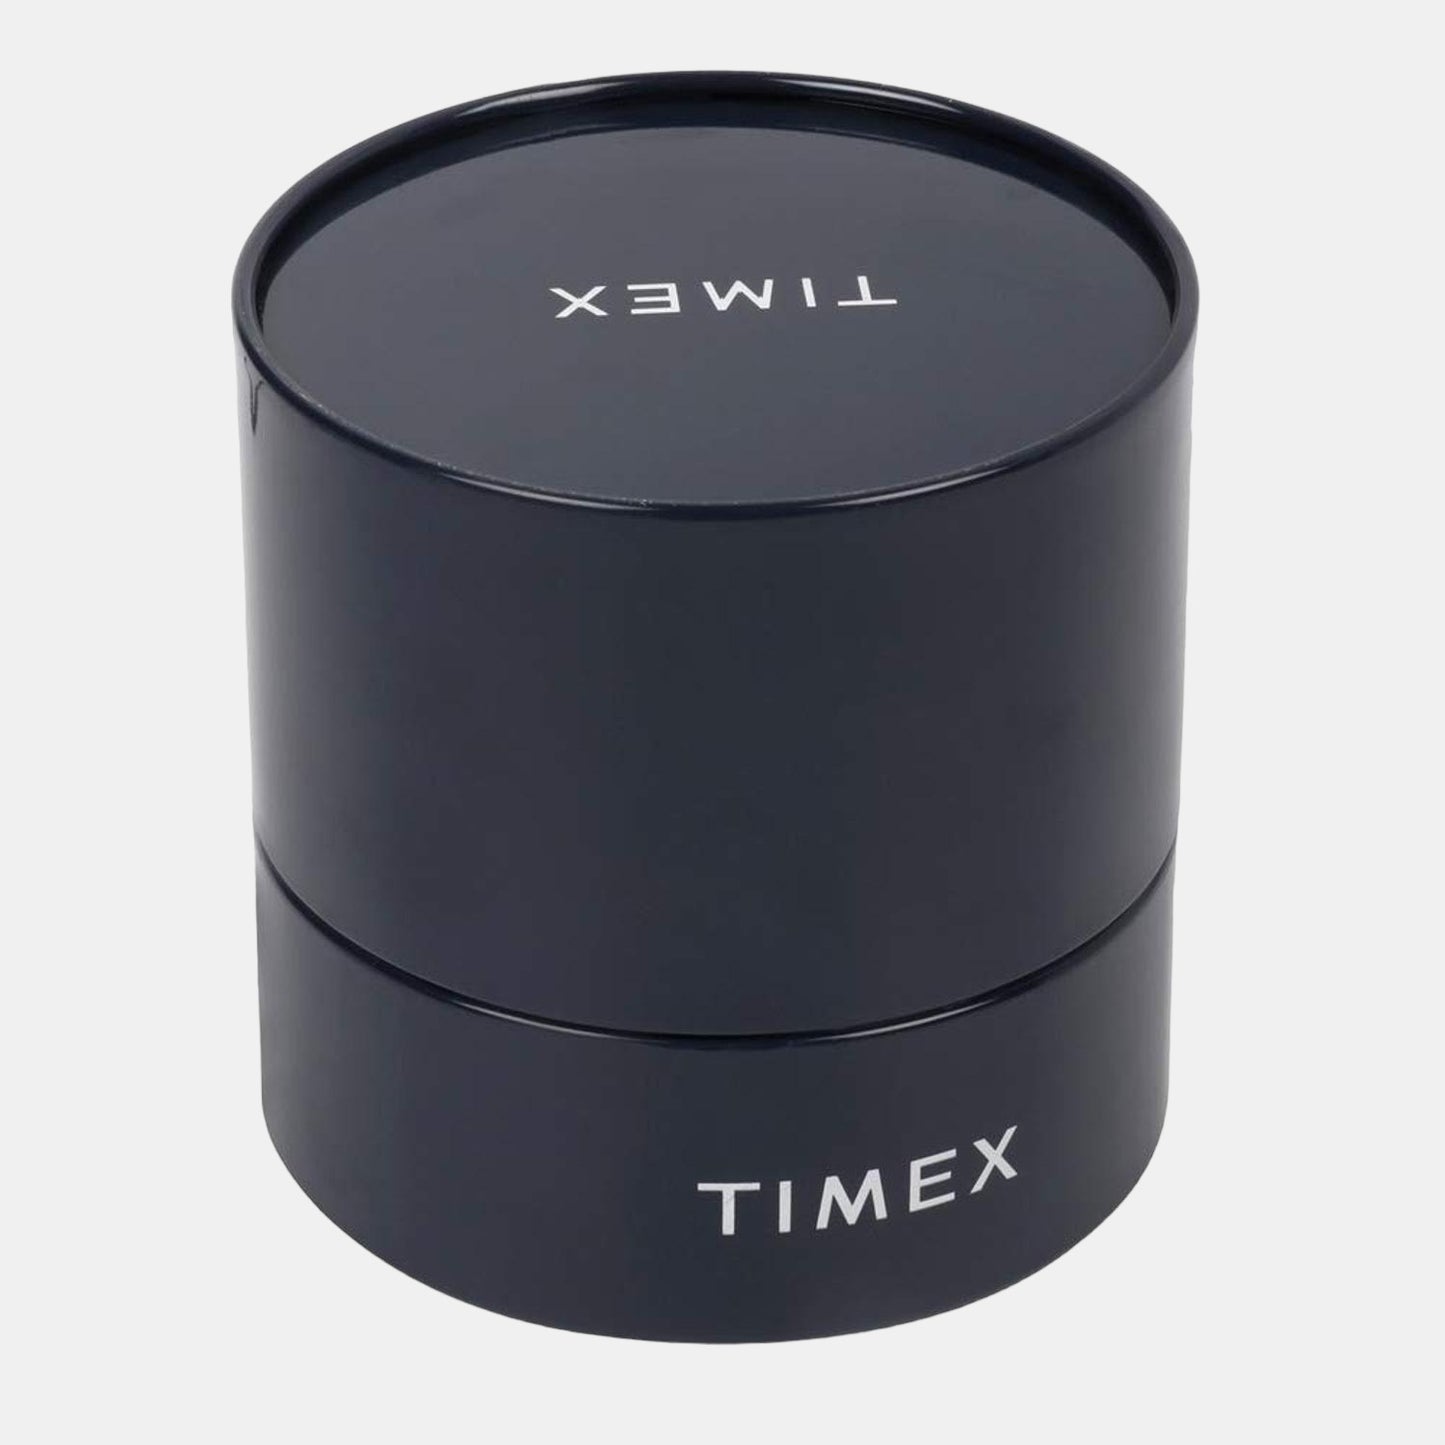 timex-brass-silver-analog-male-watch-tweg16519